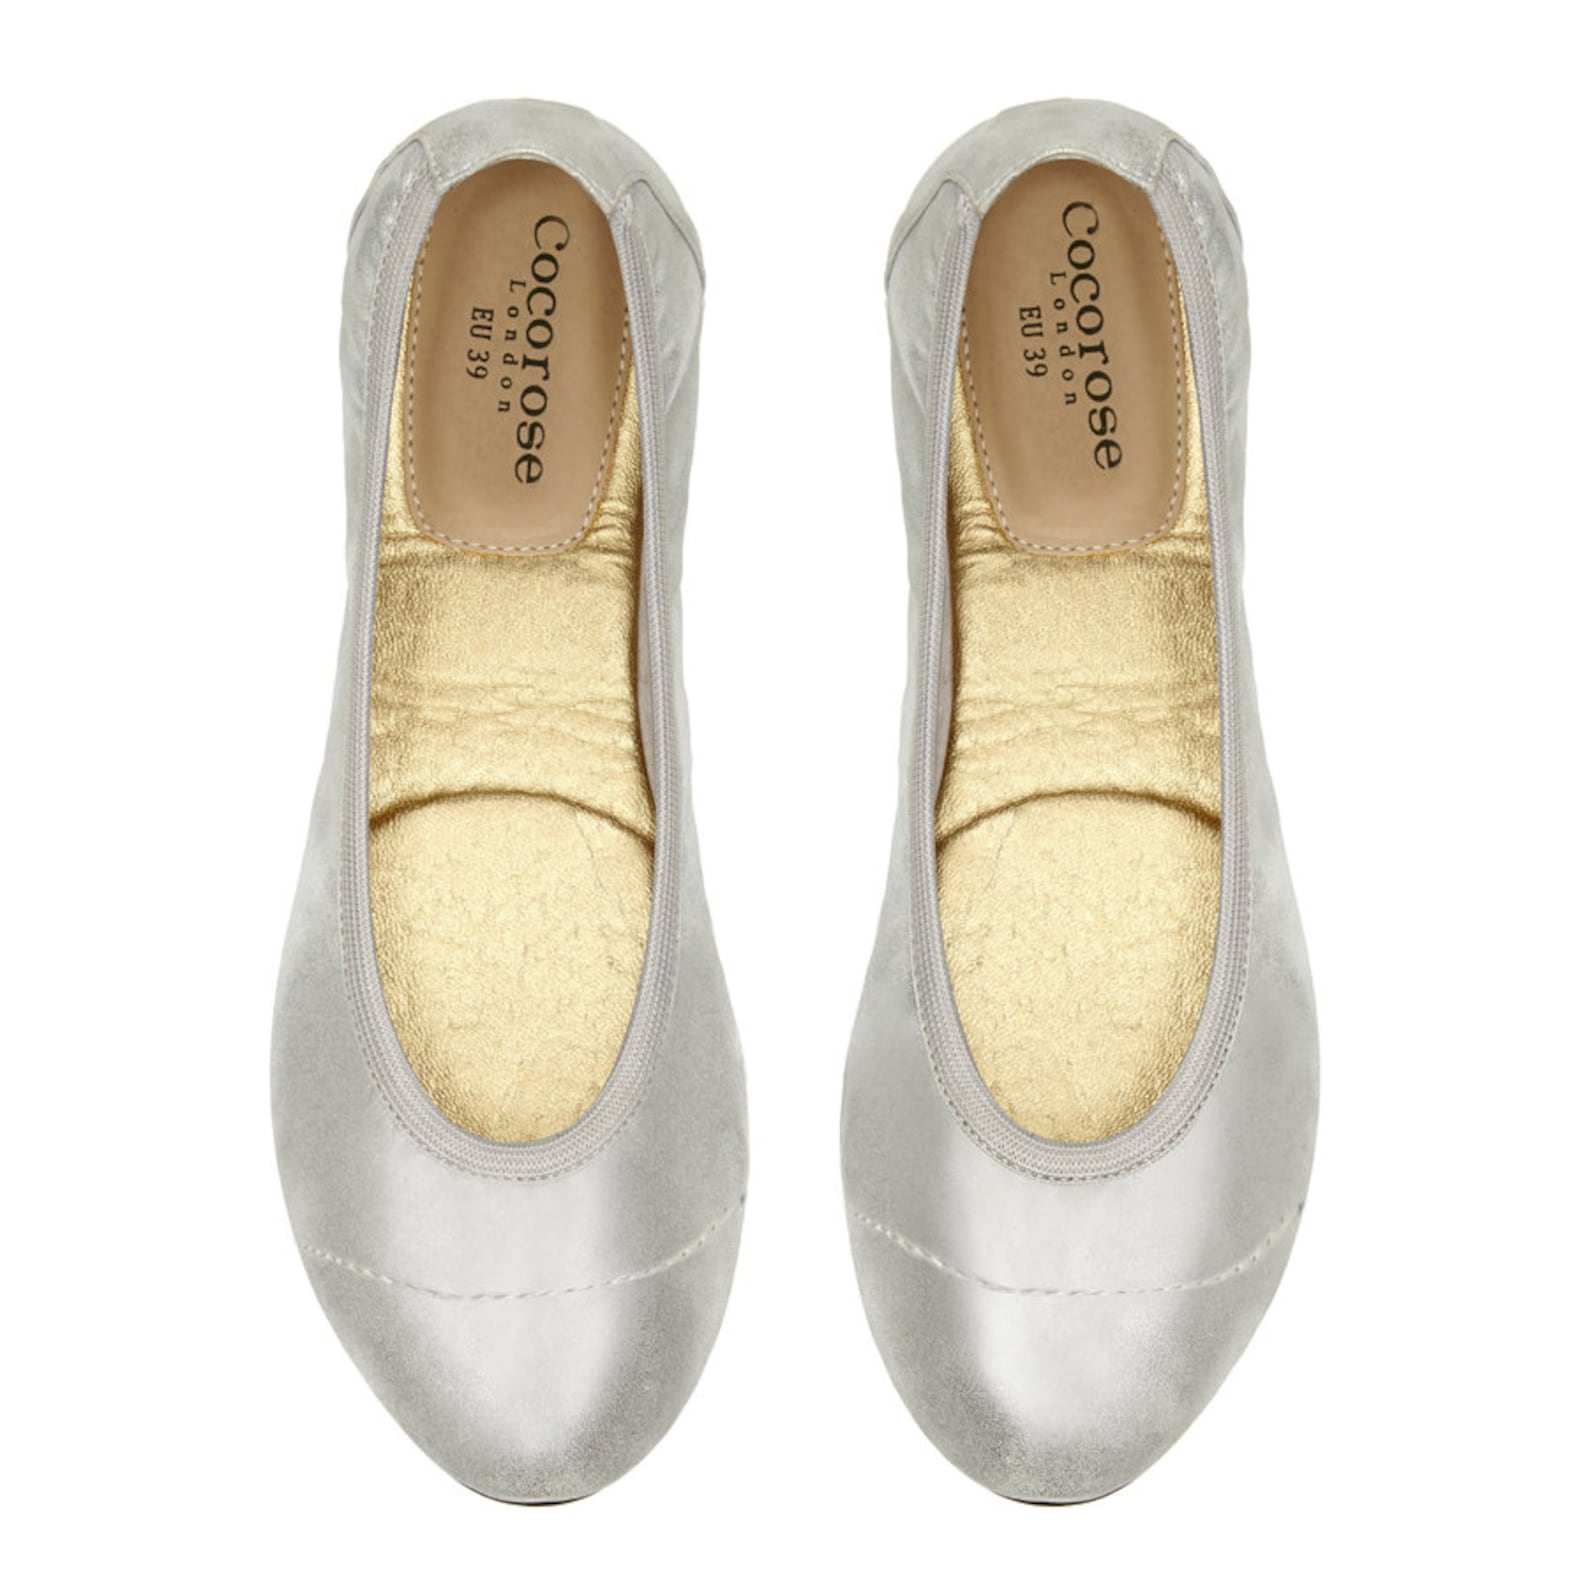 cocorose foldable shoes - barbican ladies ballet pumps